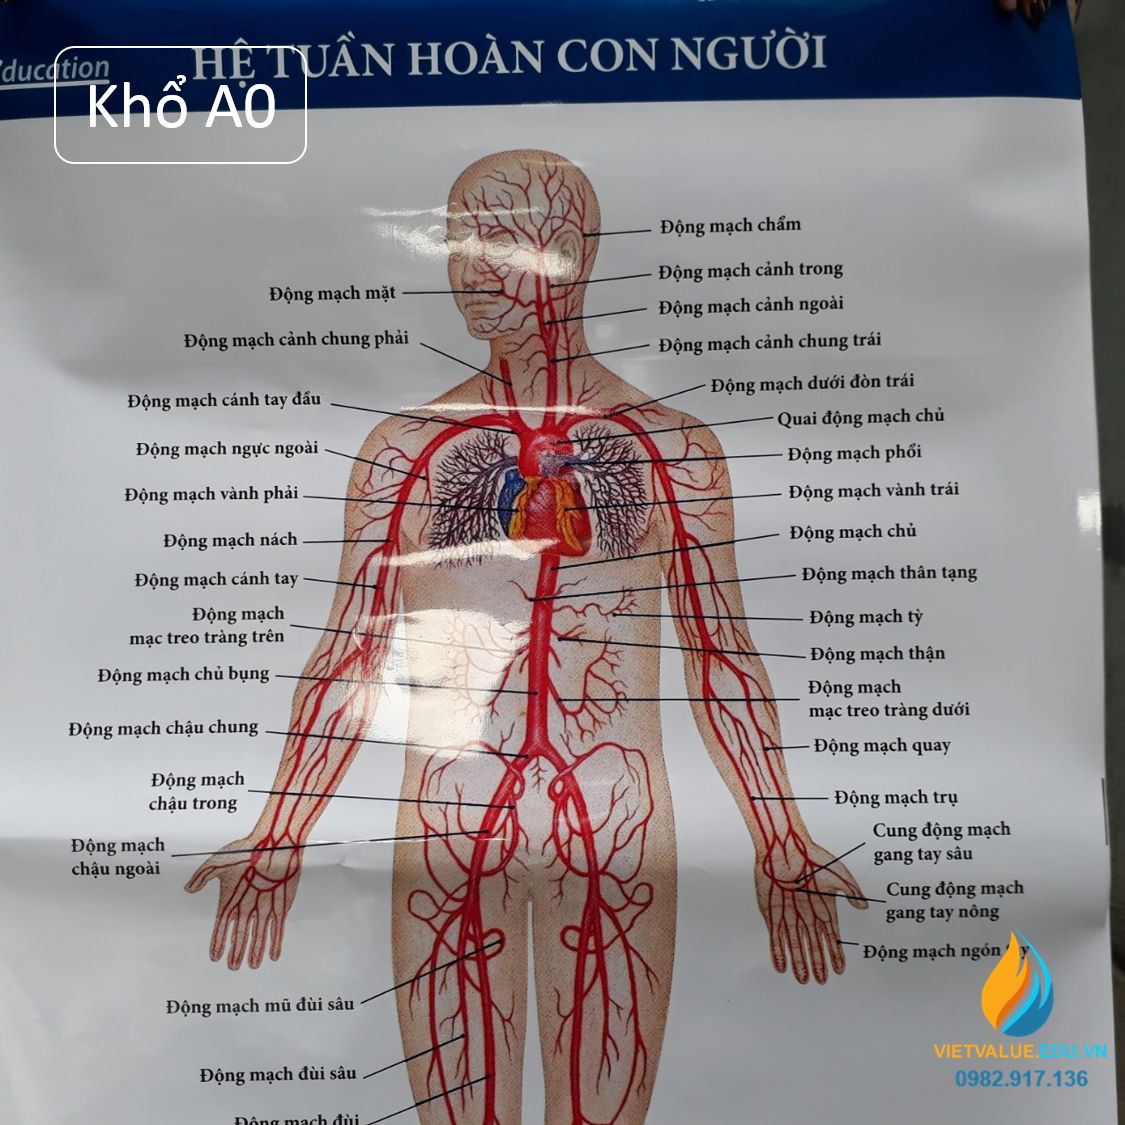 Poster cấu tạo hệ tuần hoàn con người, tranh ảnh sinh học giảng dạy cho học sinh quan sát